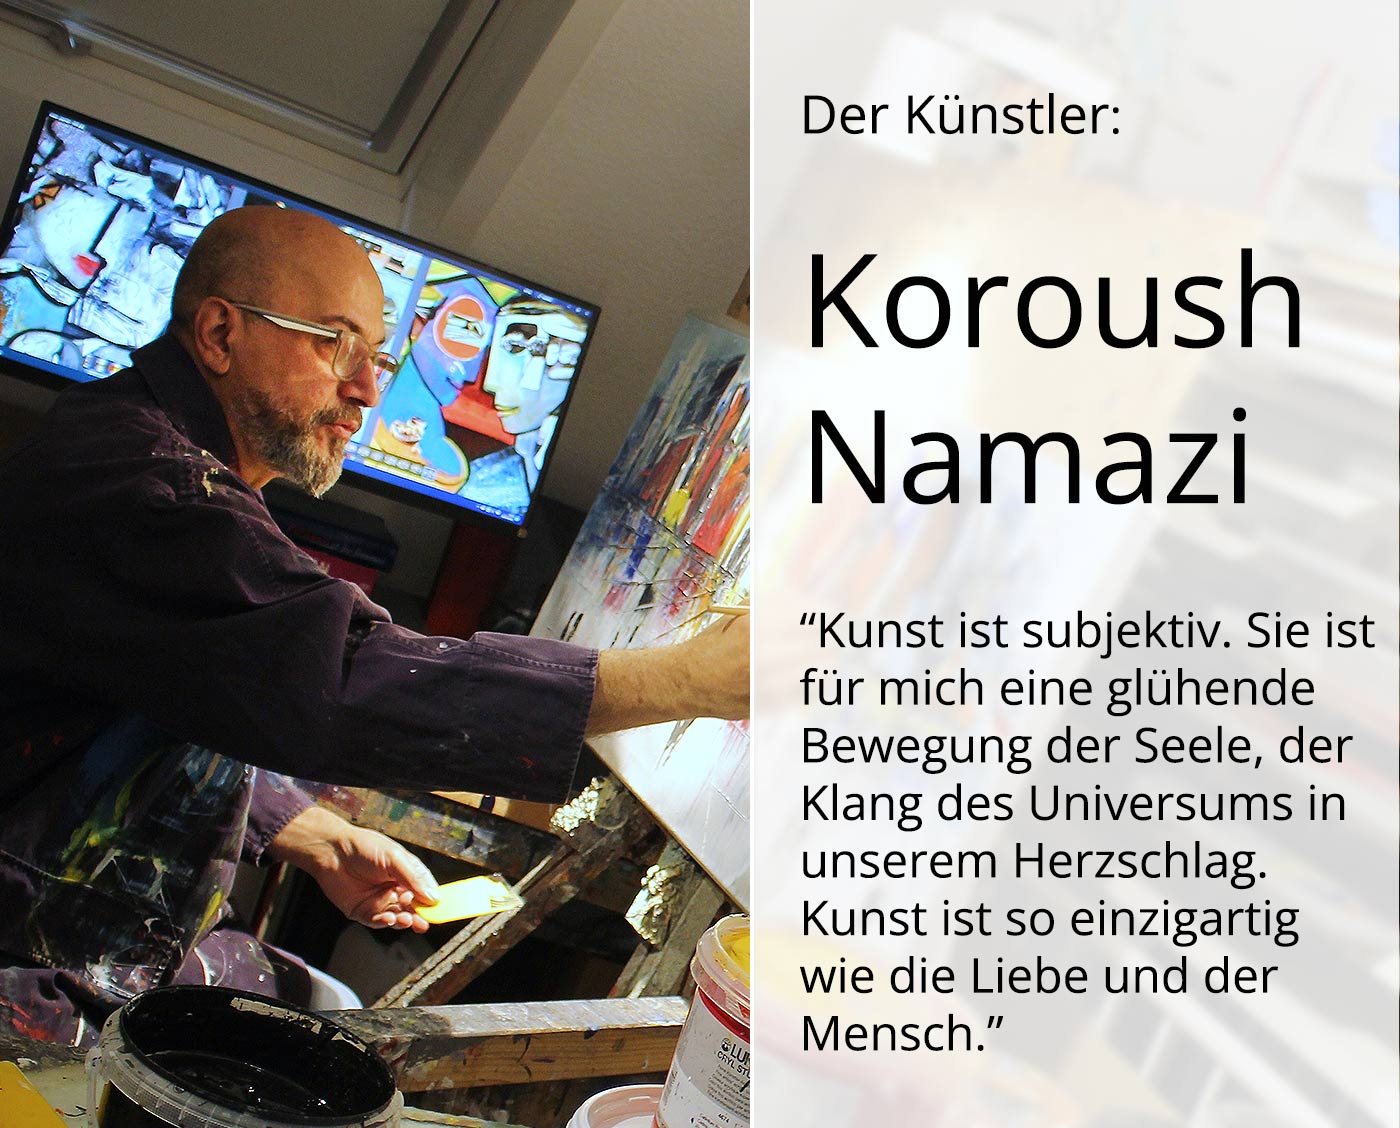 Kunstdruck, signiert: "Künstler im Rausch", K. Namazi, Edition, Nr. 1/100